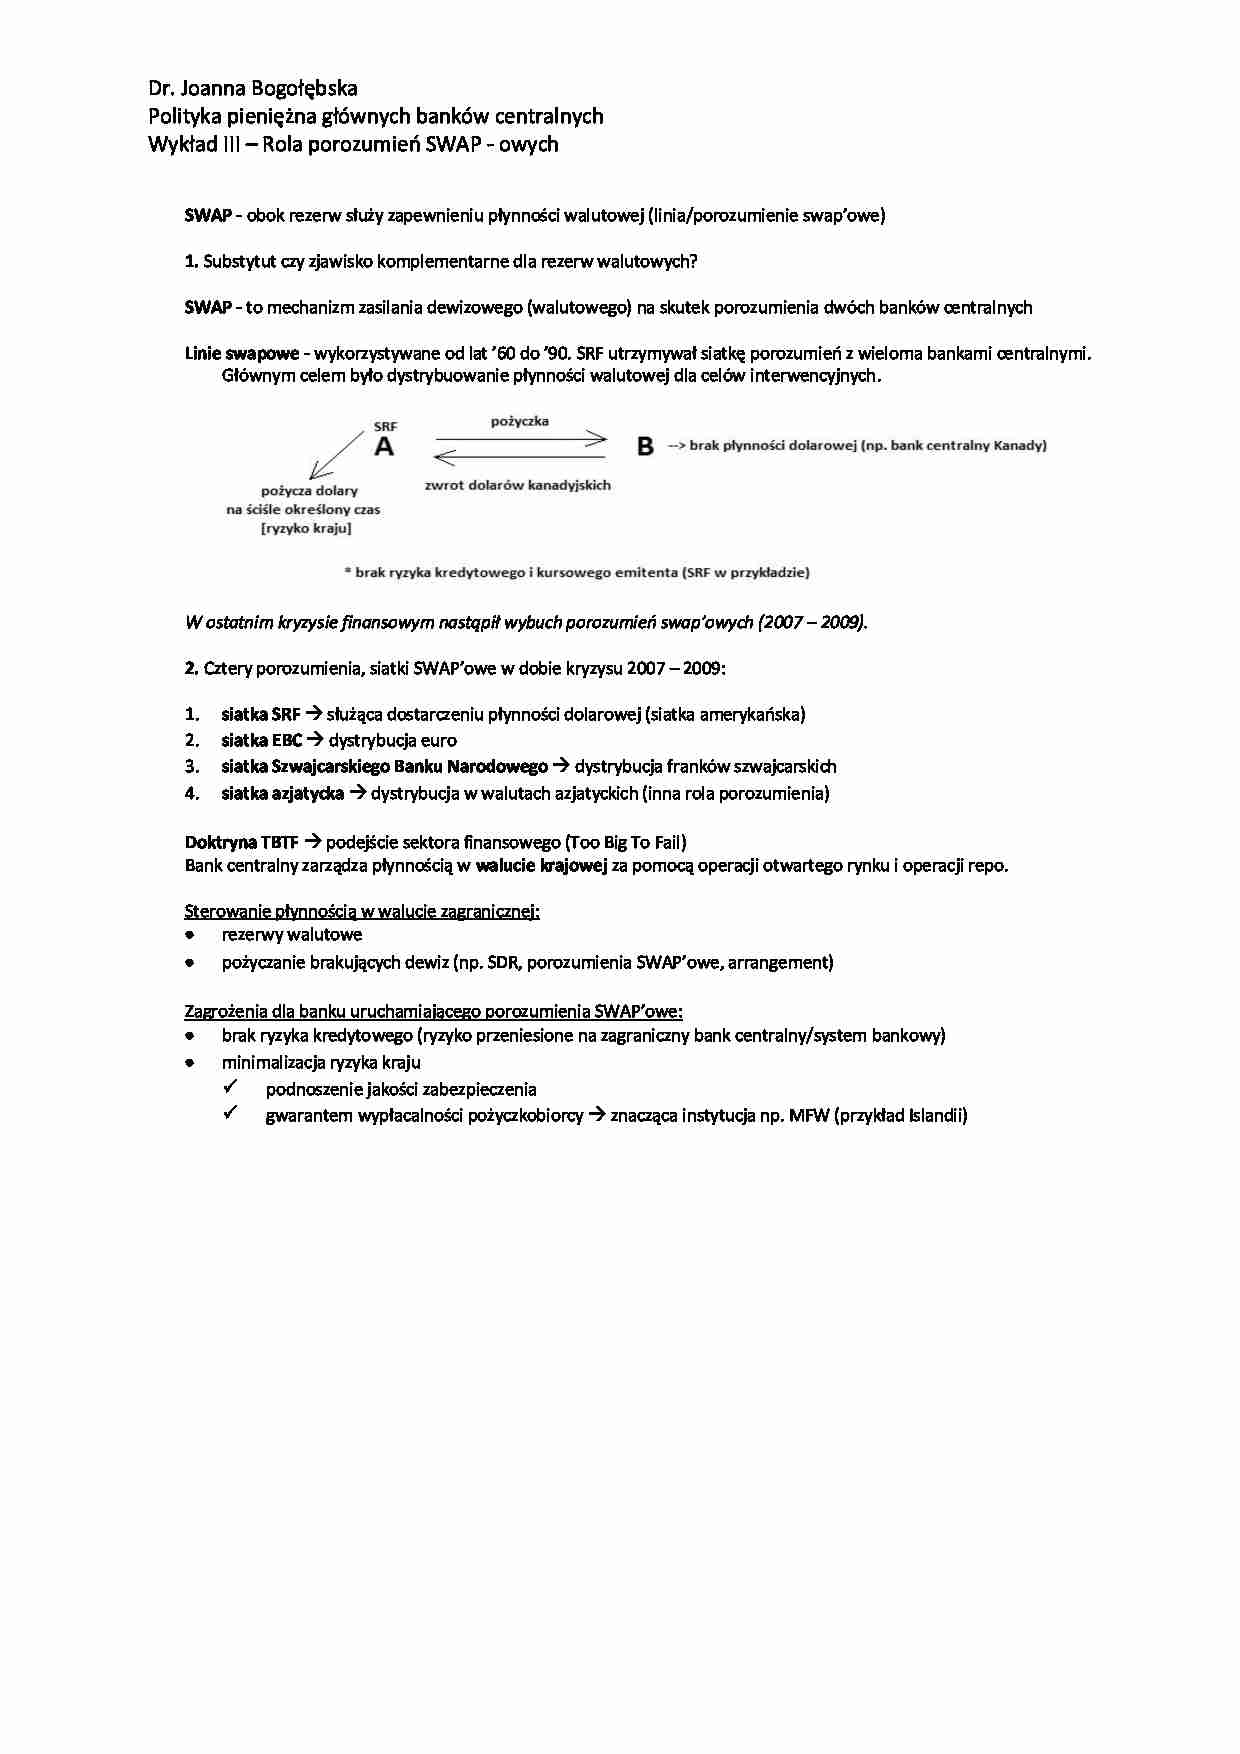 Rola porozumień SWAP-owych - wykład - strona 1